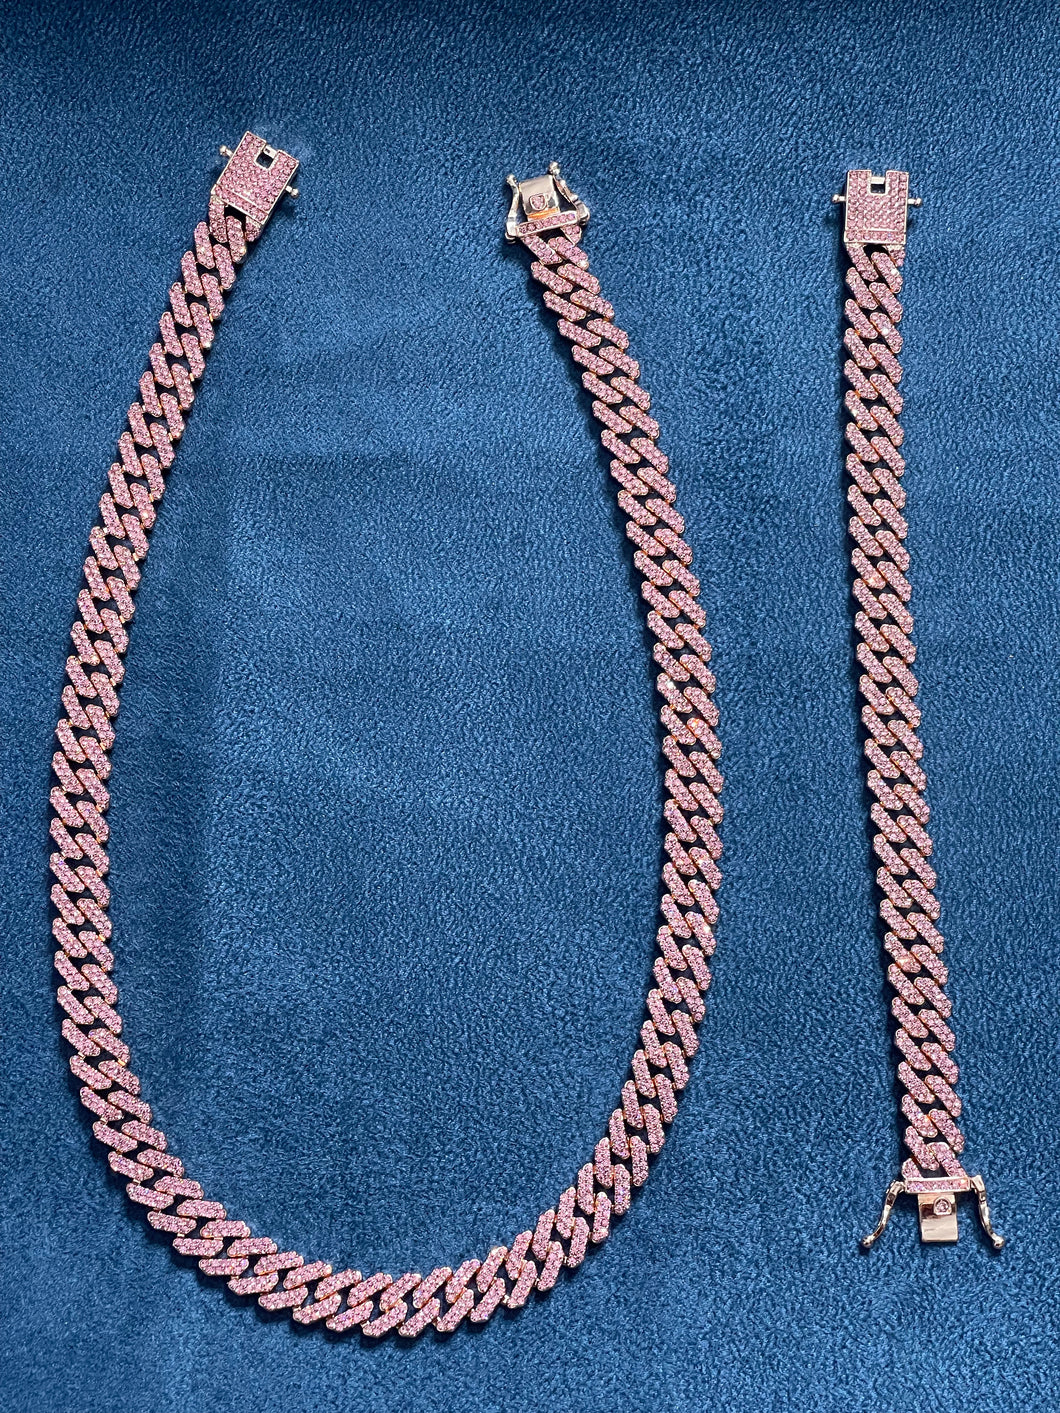 Conjunto cadena y brazalete prong pink (laminado en 18 quilates rose gold) 22 micras